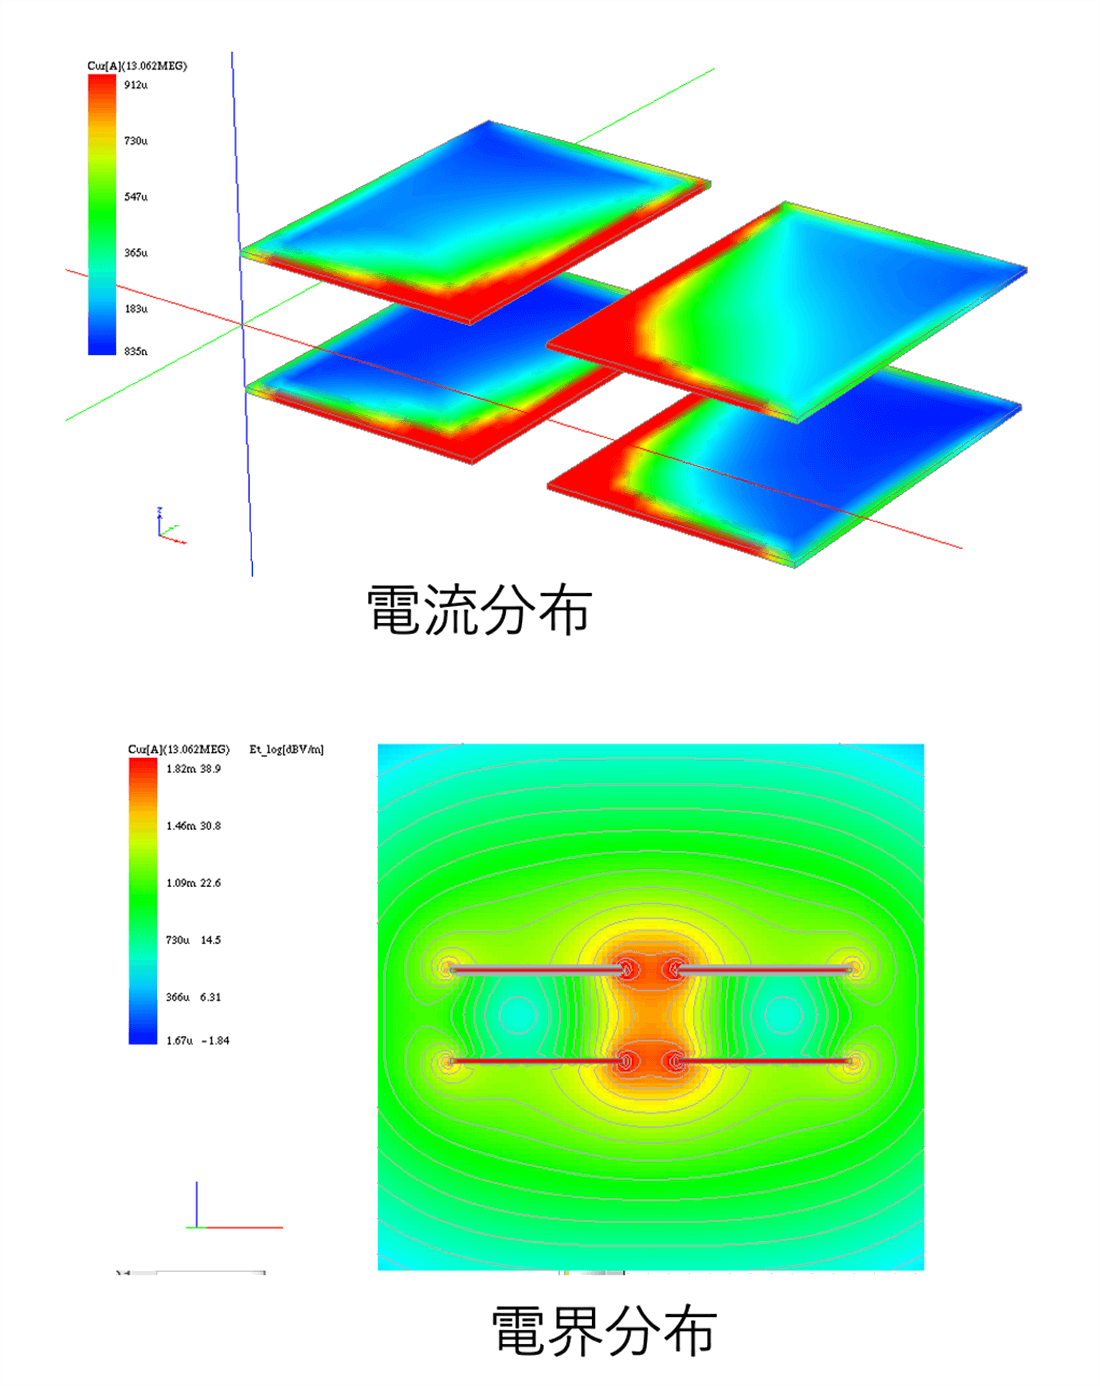 対向する平板を用いた電界結合方式の電力伝送の解析例